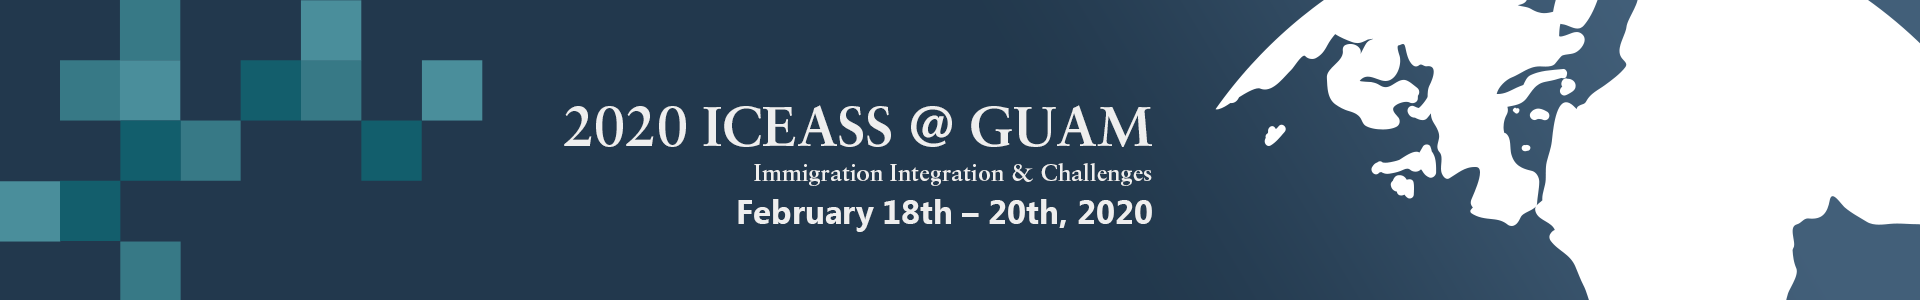 2020 ICEASS @ GUAM: Immigration Integration & Challenges, Tumon, Tamuning, Guam